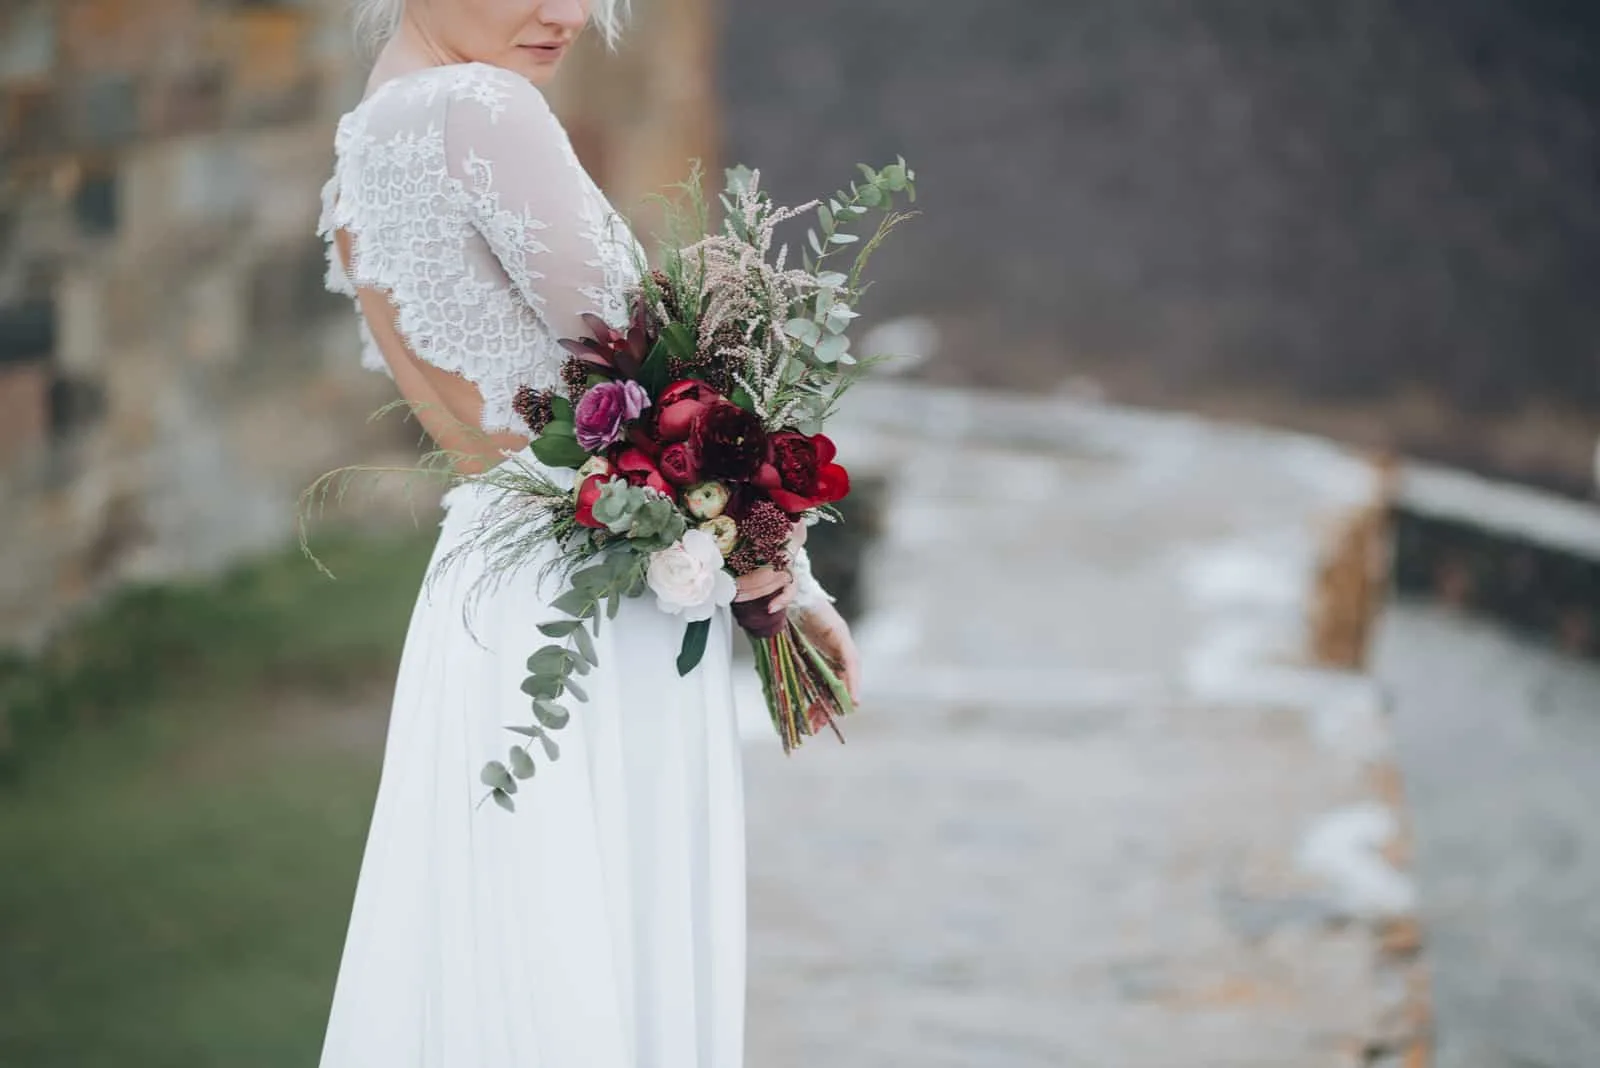 Die Braut mit einem Blumenstrauß in der Hand steht